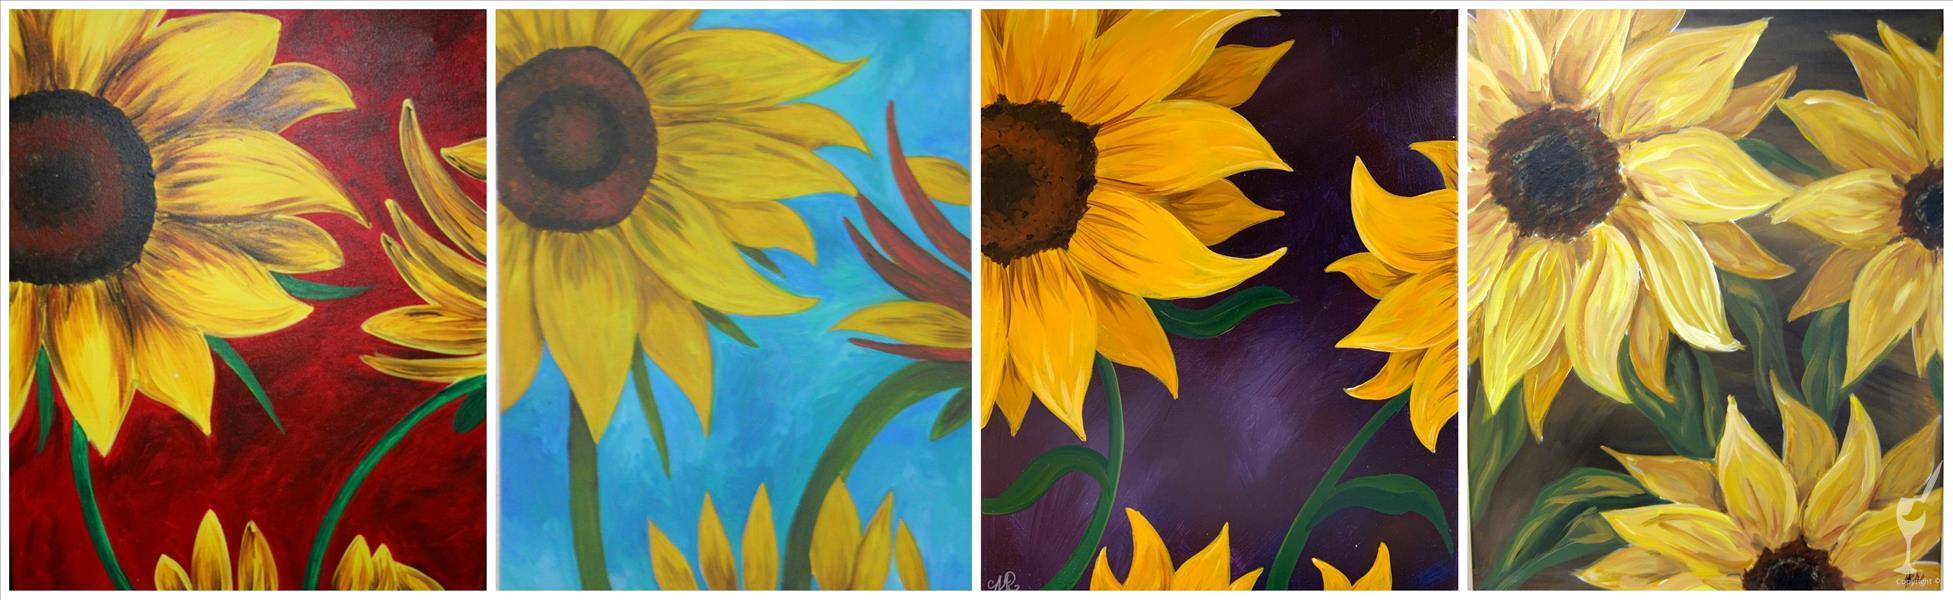 Sunflowers - Set